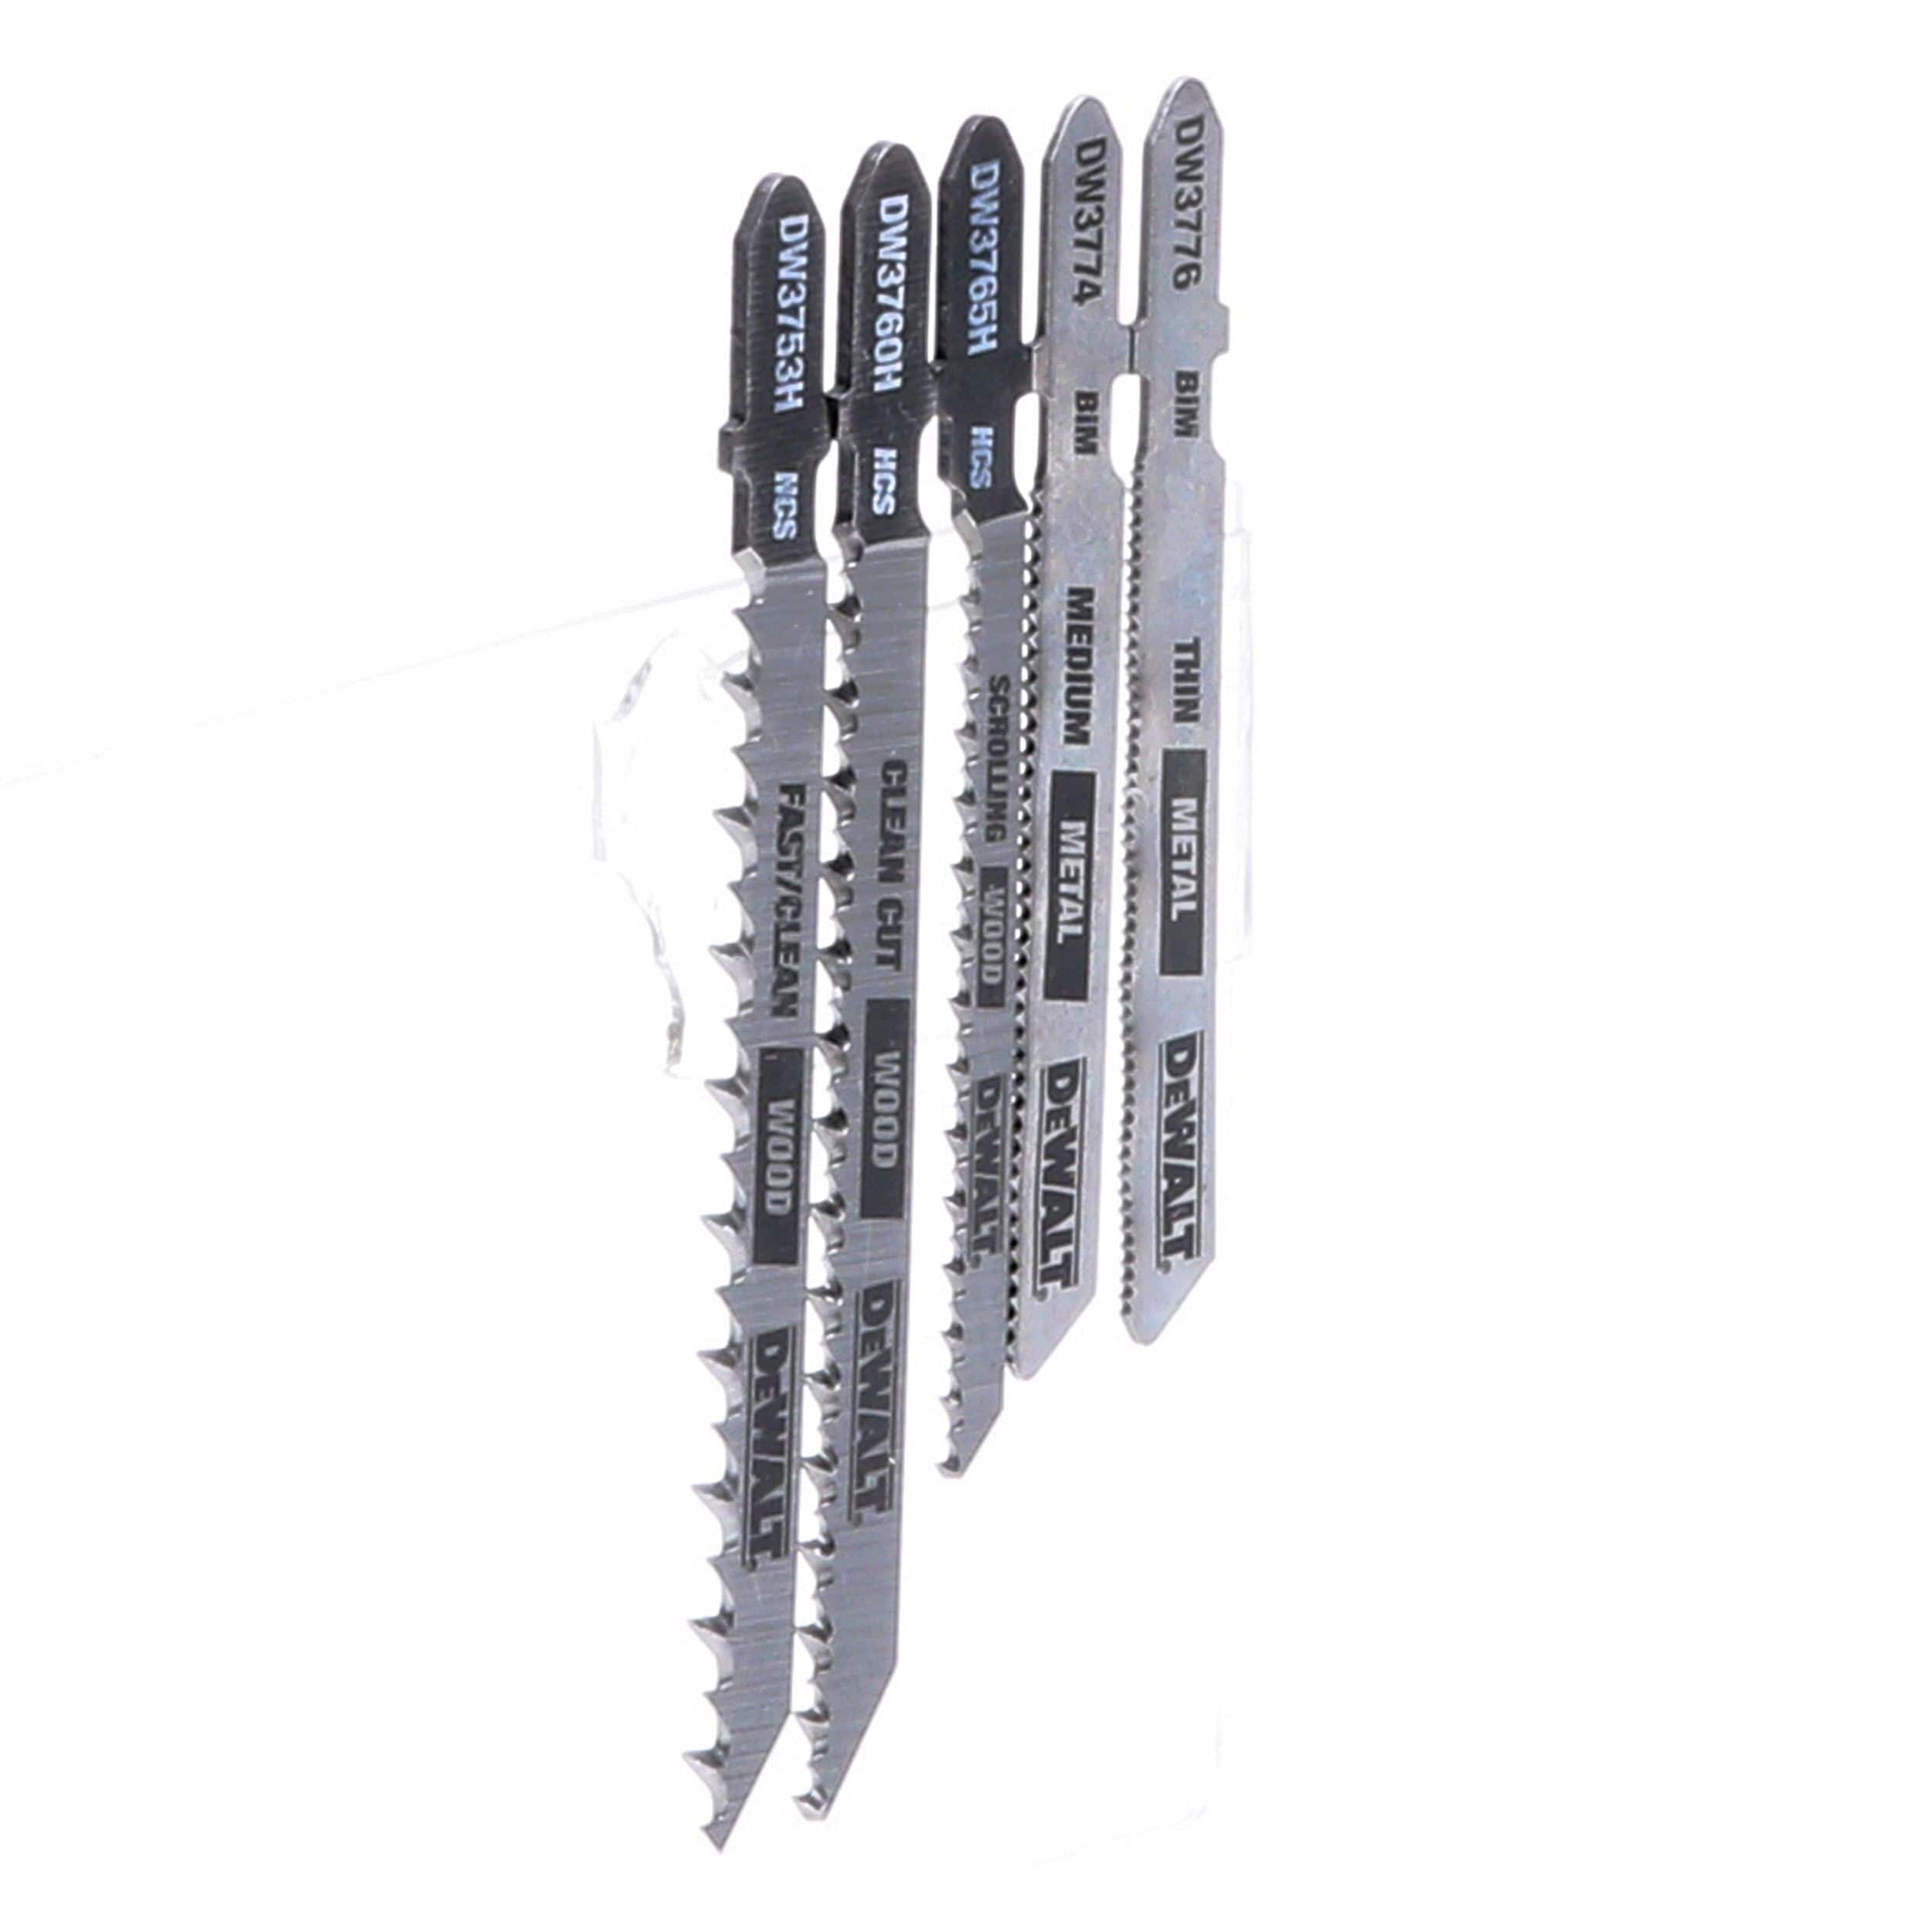 15 x Sawrus Jigsaw Blades T123X for Metal fits Bosch Dewalt Hitachi Makita 